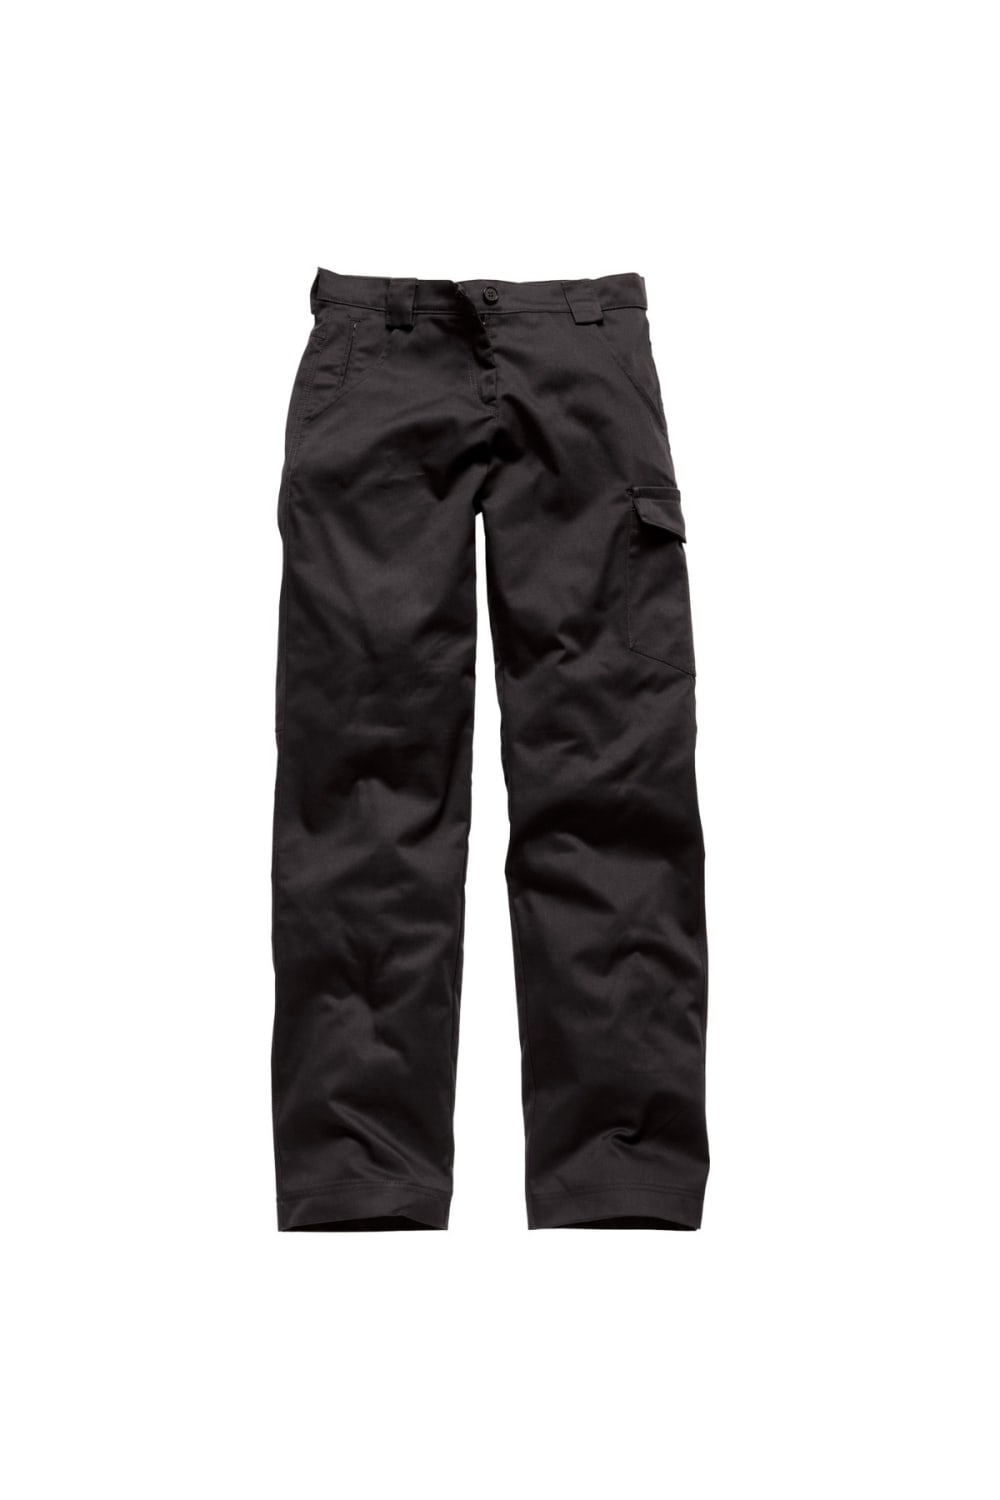 Dickies Womens/Ladies Redhawk Workwear Pants (Regular) (Black)